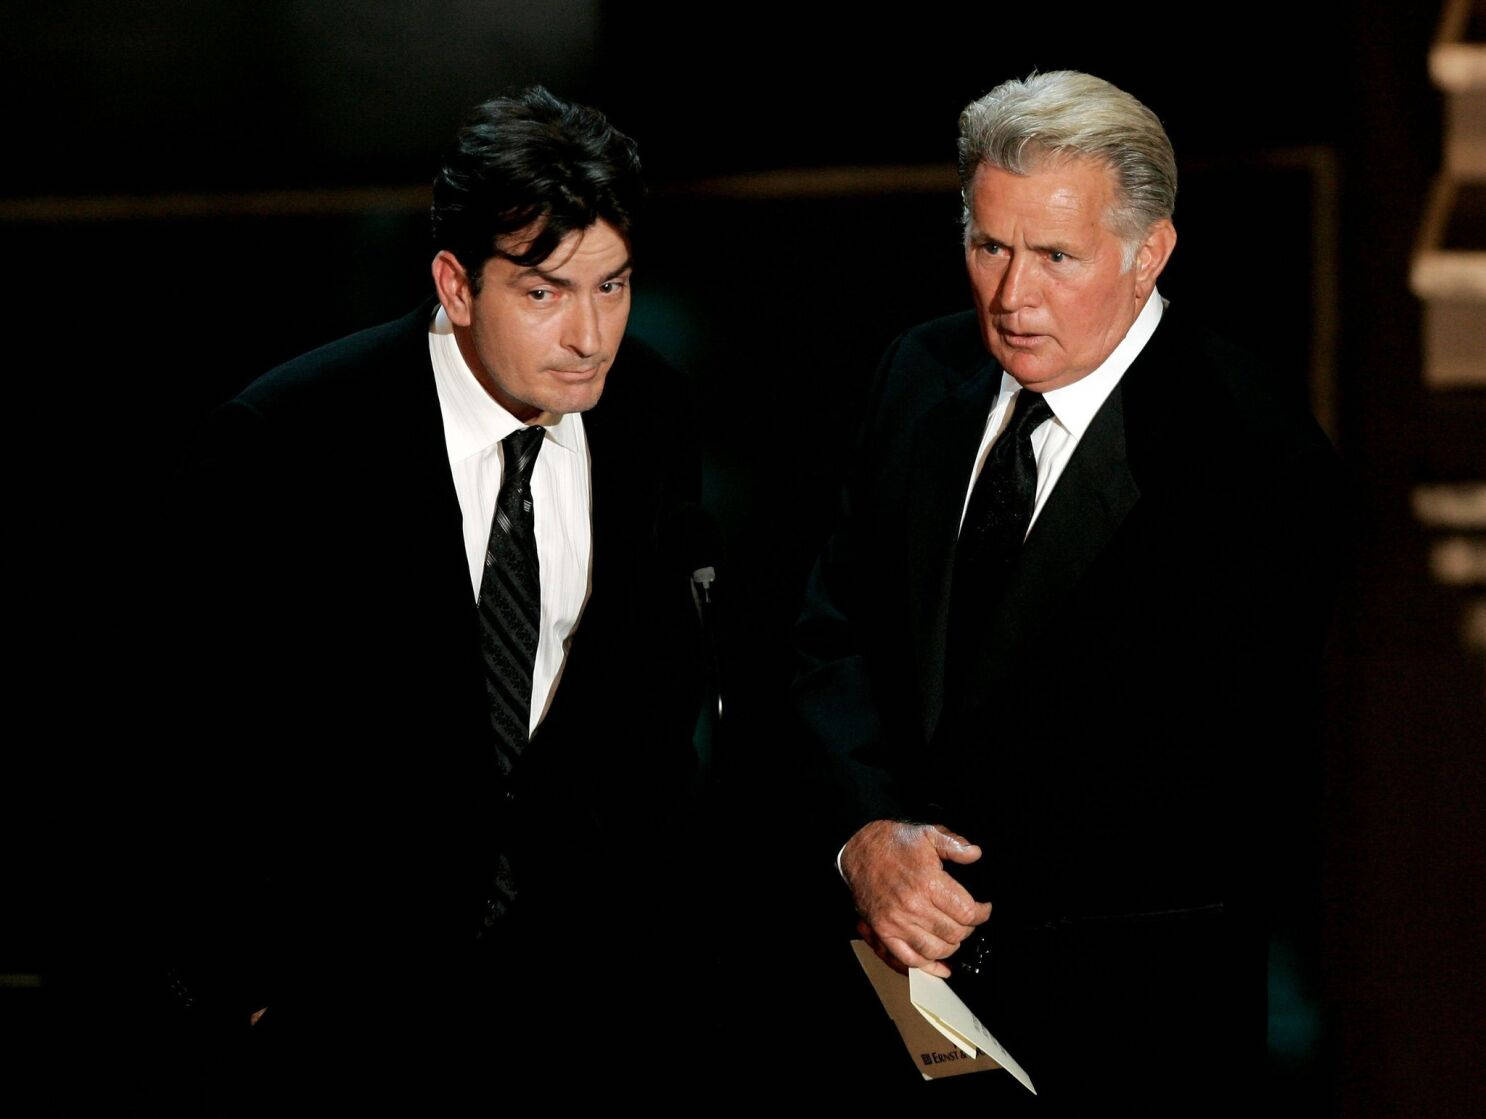 Amerikanischeschauspieler Charlie Sheen Und Martin Sheen Bei Den Emmy Awards. Wallpaper